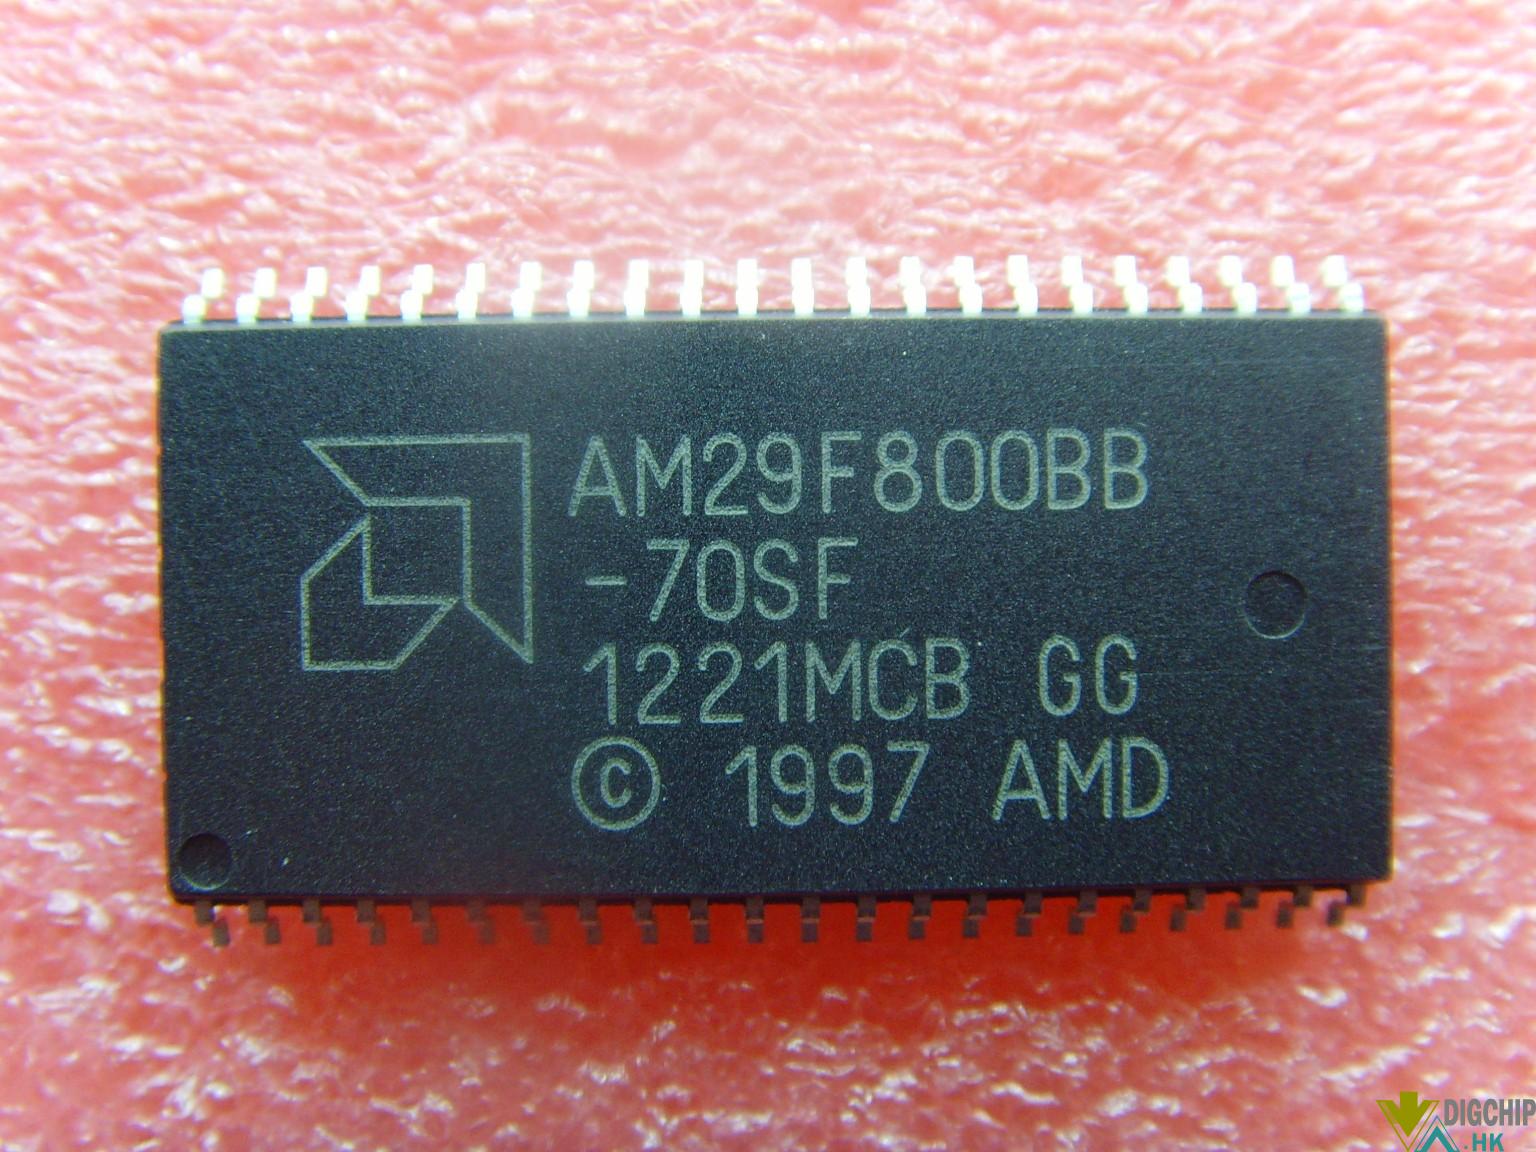 AM29F800BB-70SF